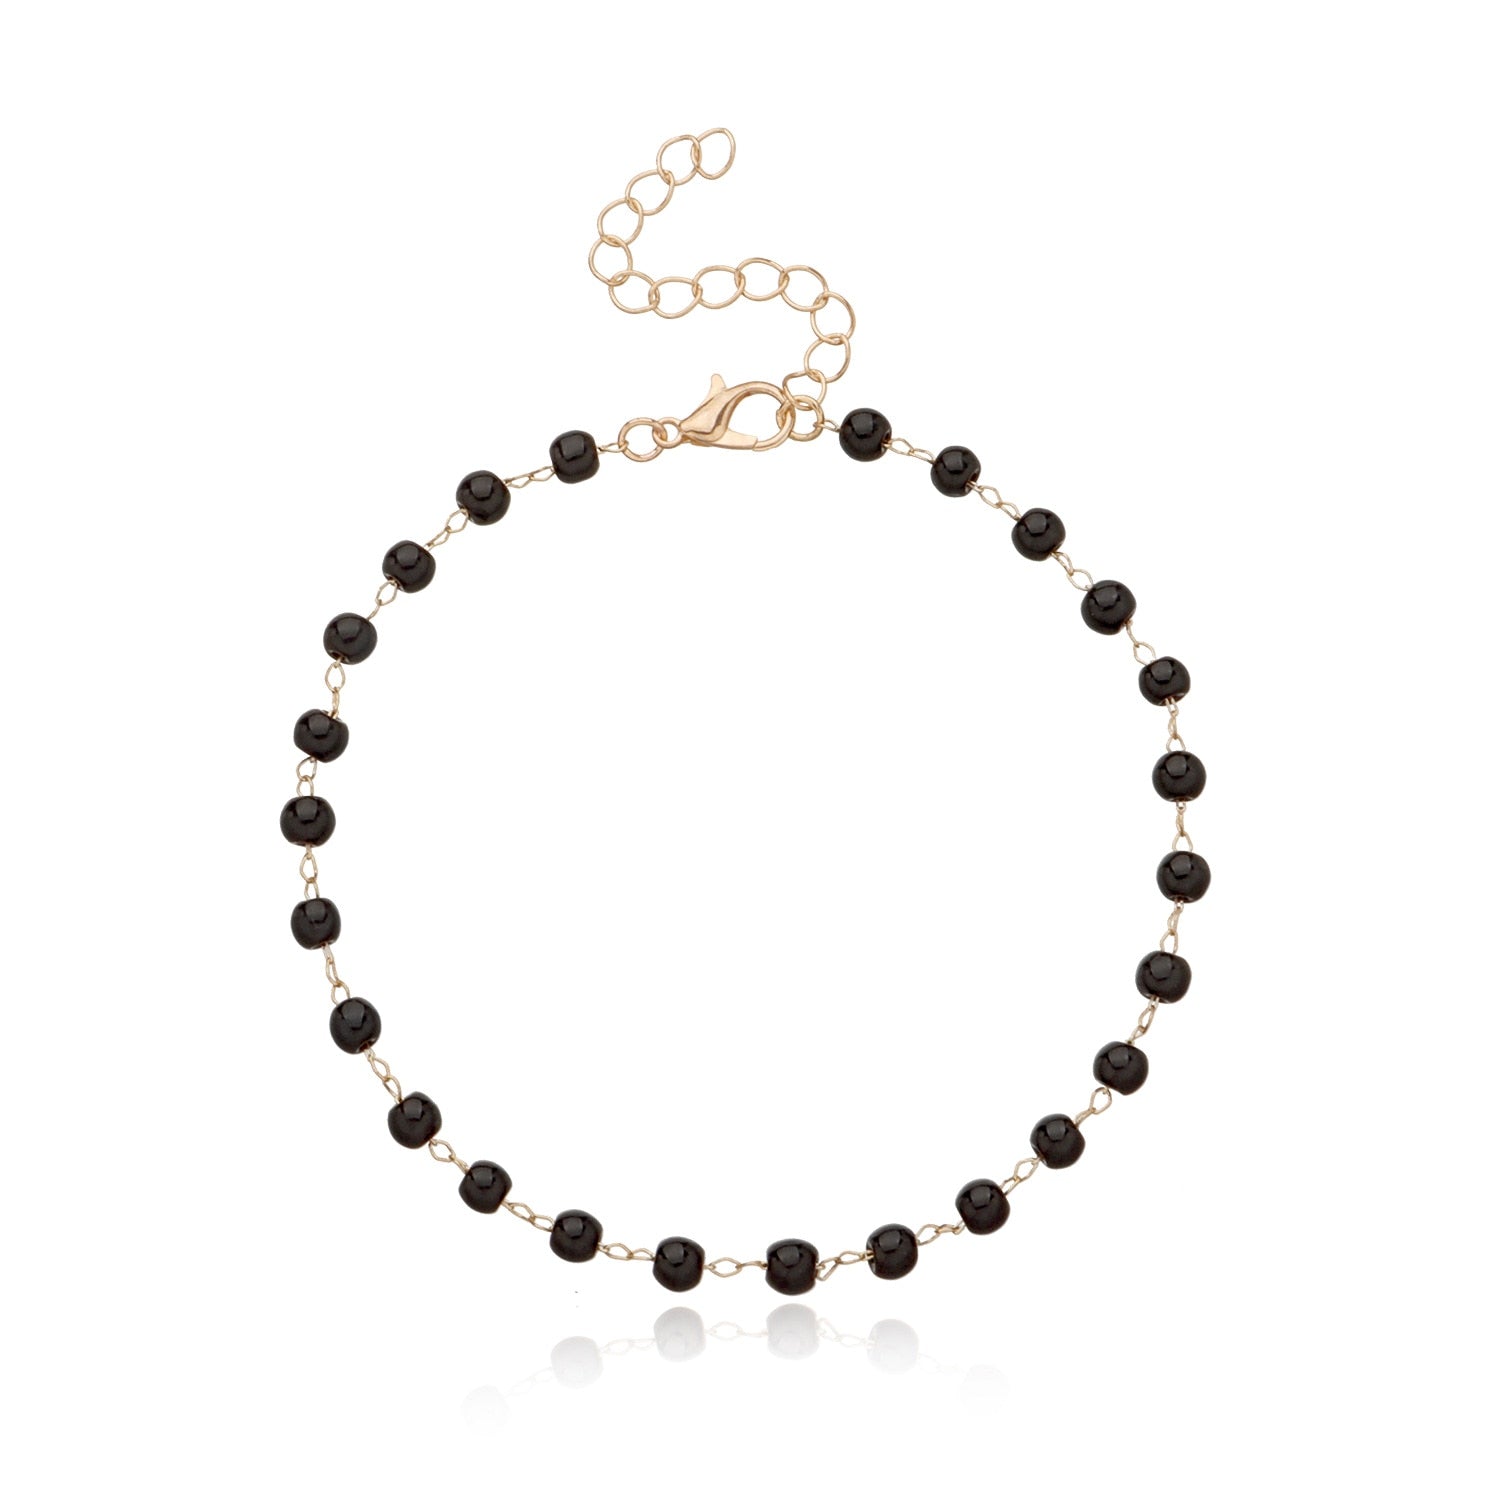 Trendy Black Crystal Beads Anklet for Women